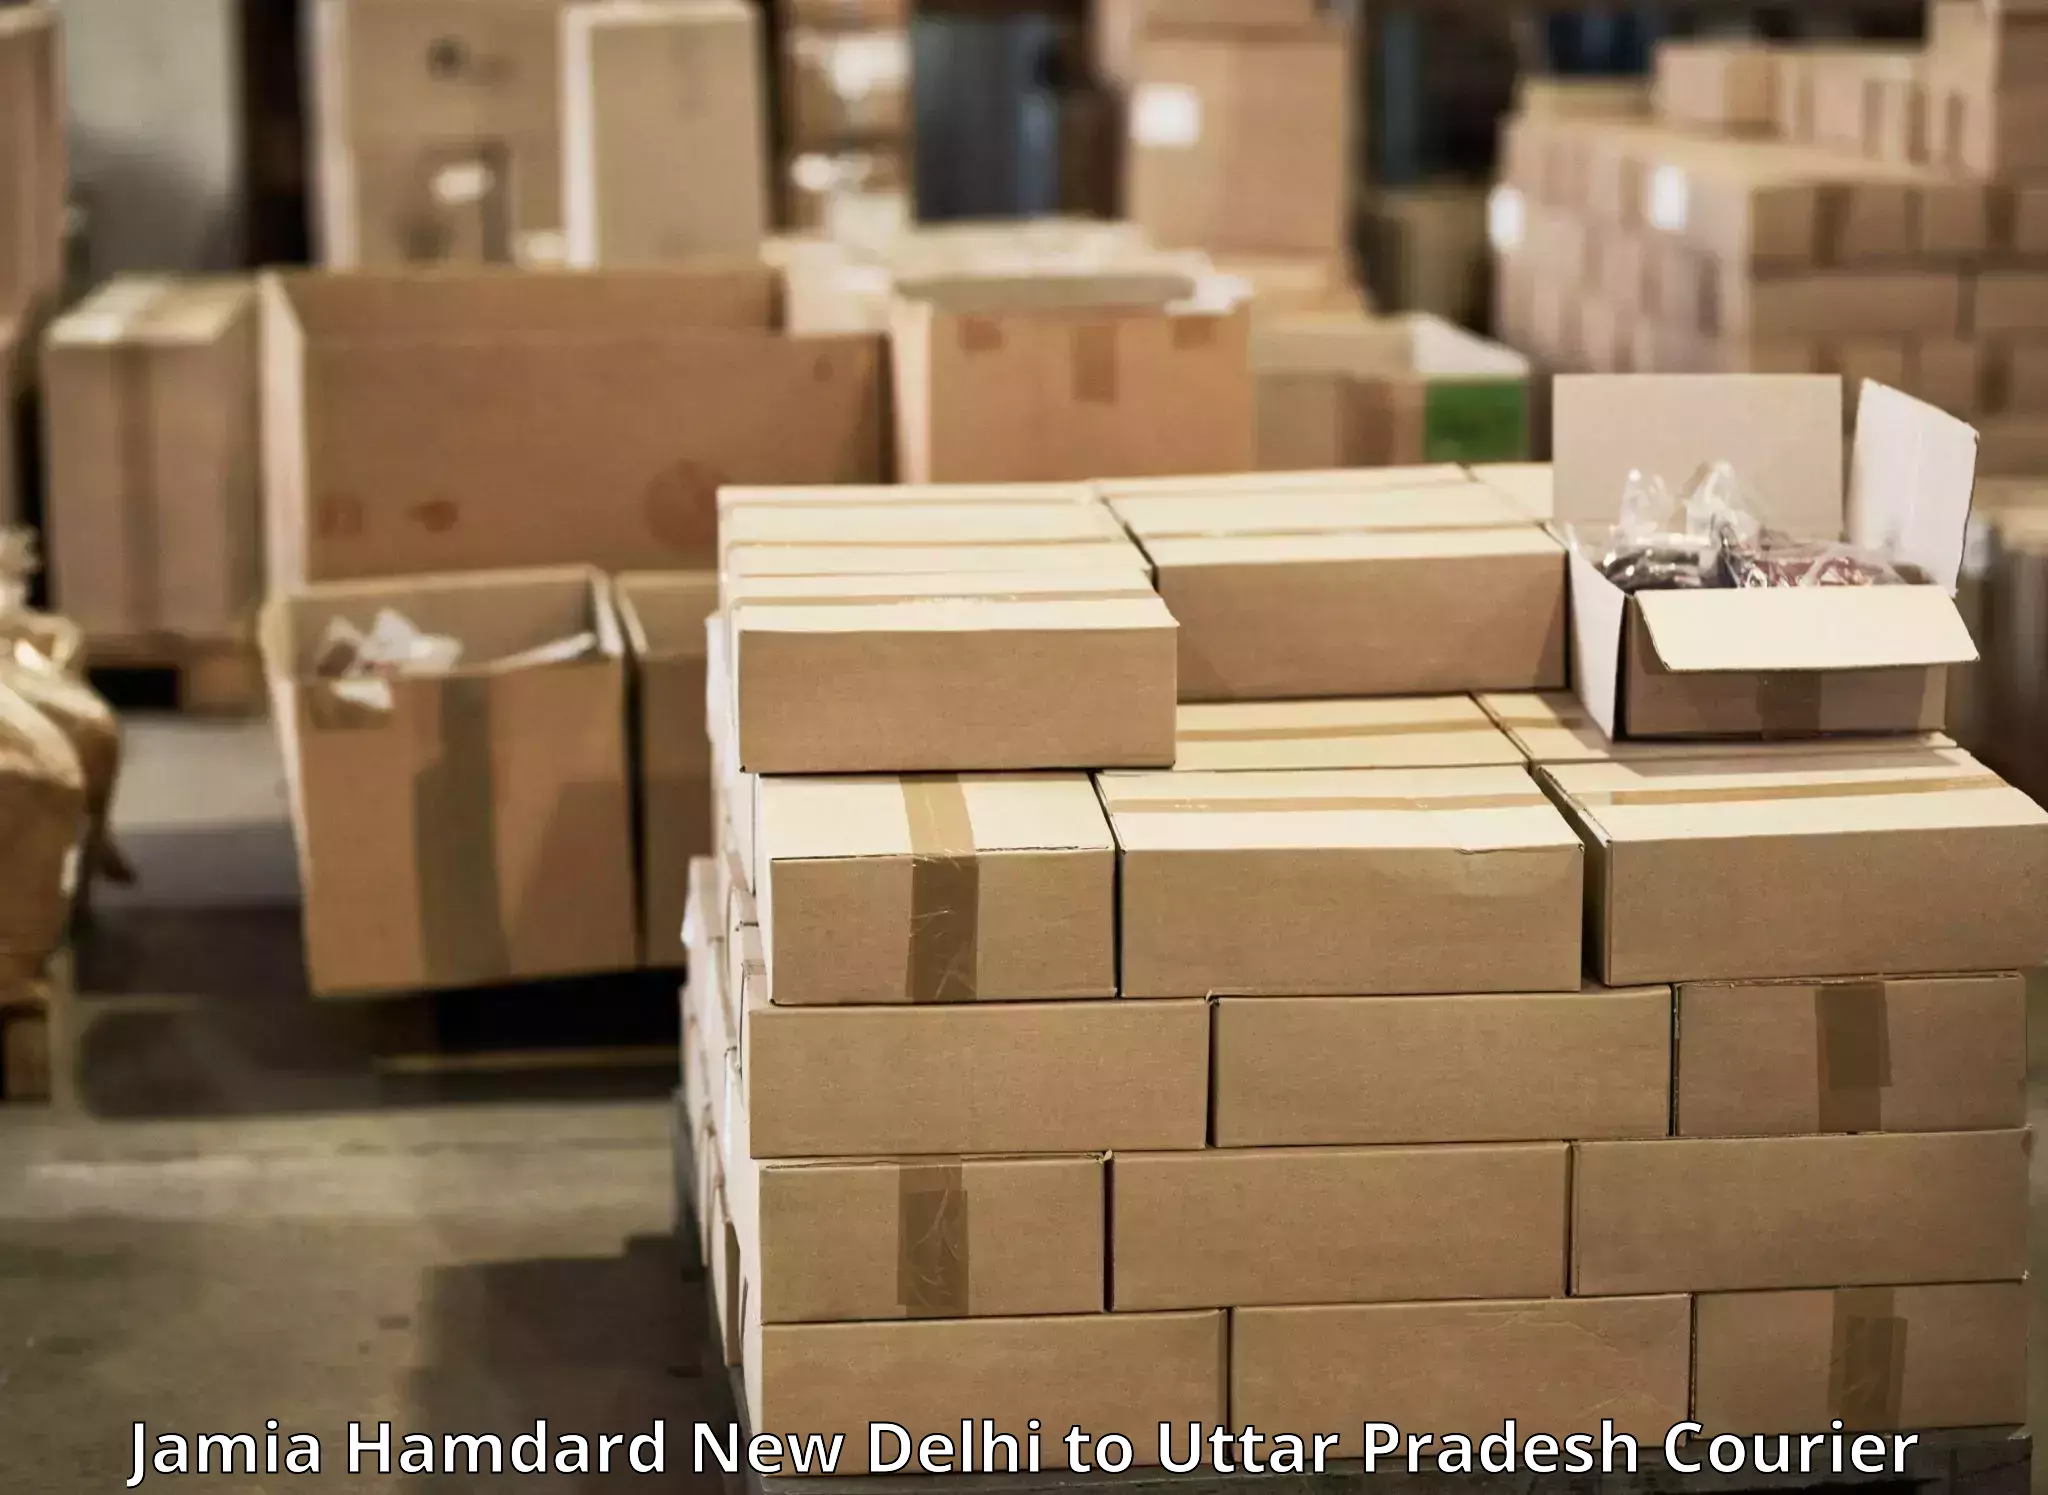 Personal parcel delivery Jamia Hamdard New Delhi to Raebareli